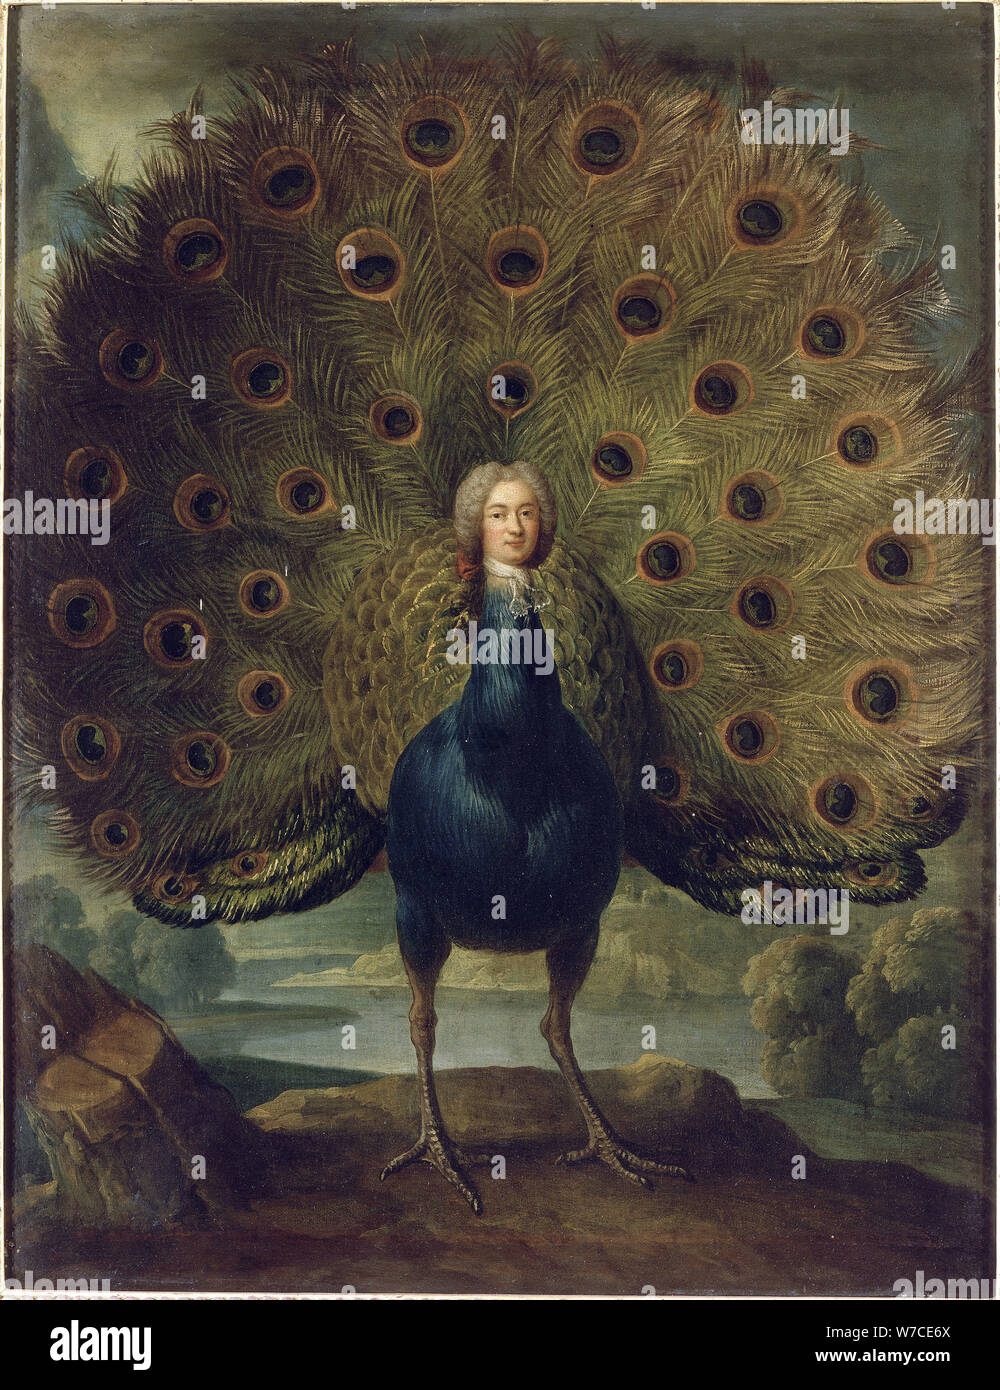 Louis Antoine de Gontaut, duc de Biron (1700-1788) as a peacock. Stock Photo